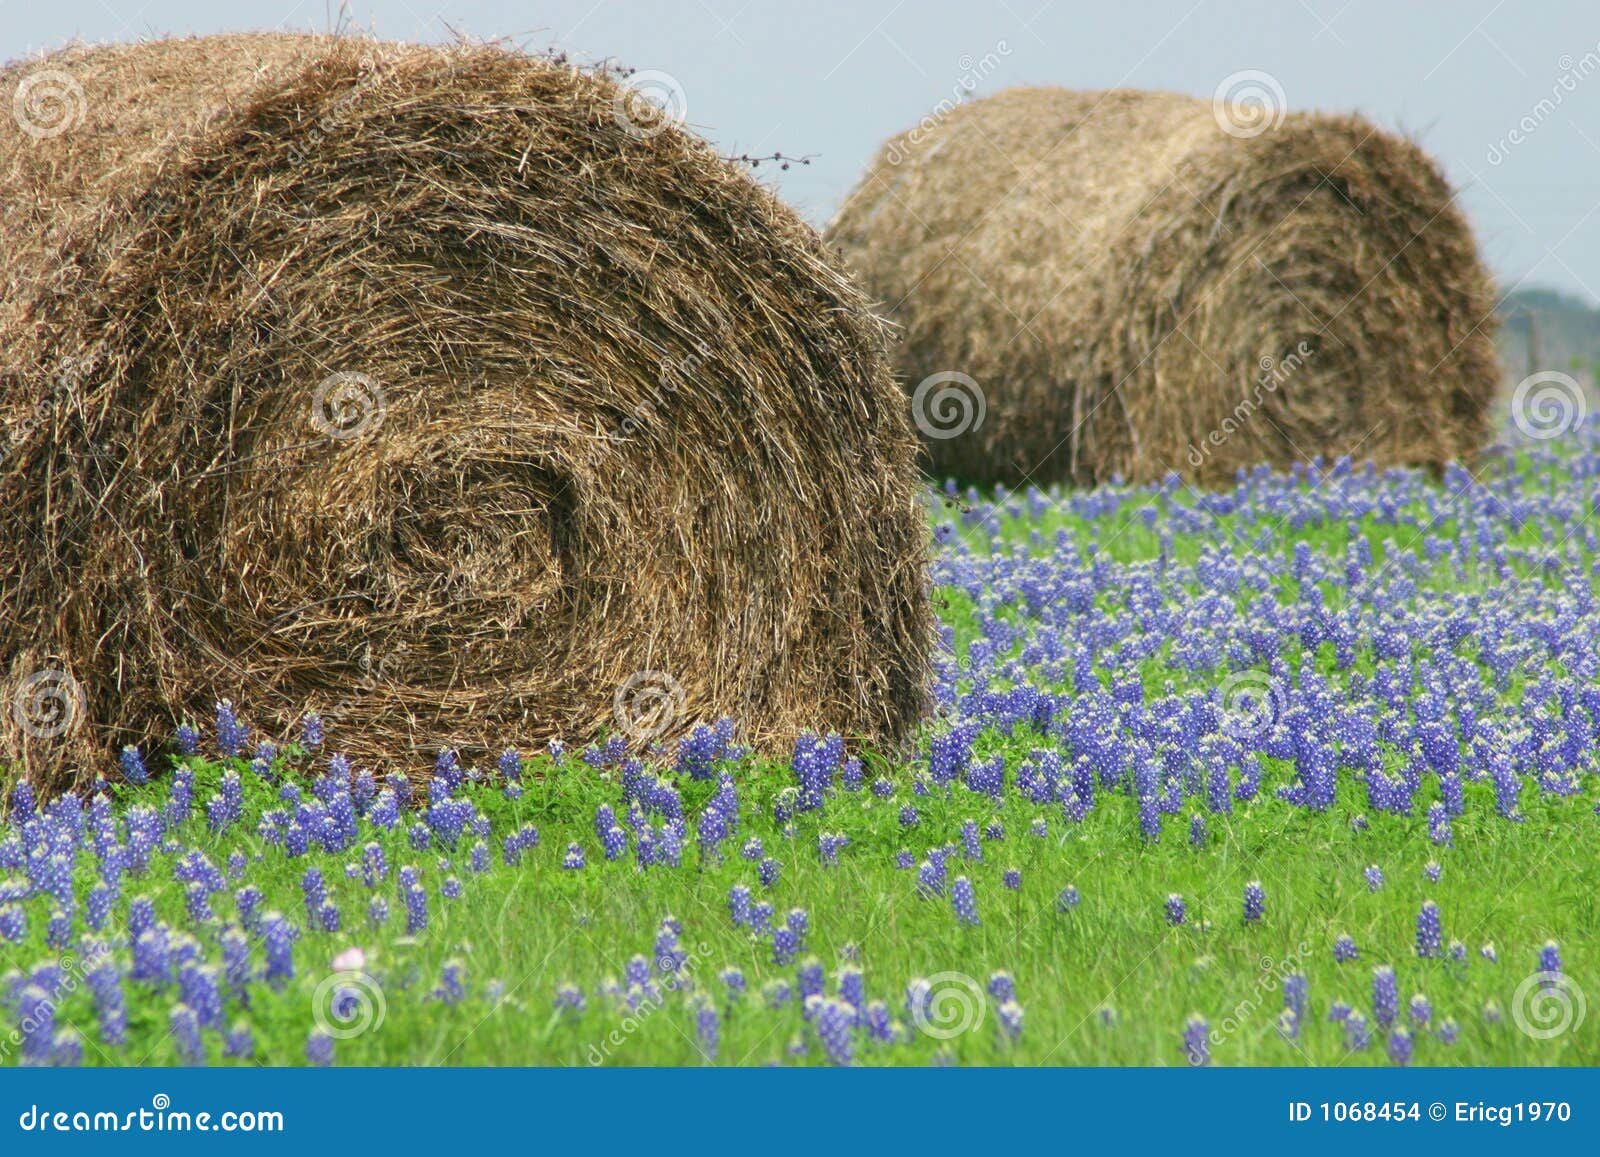 blue bonnets in the field